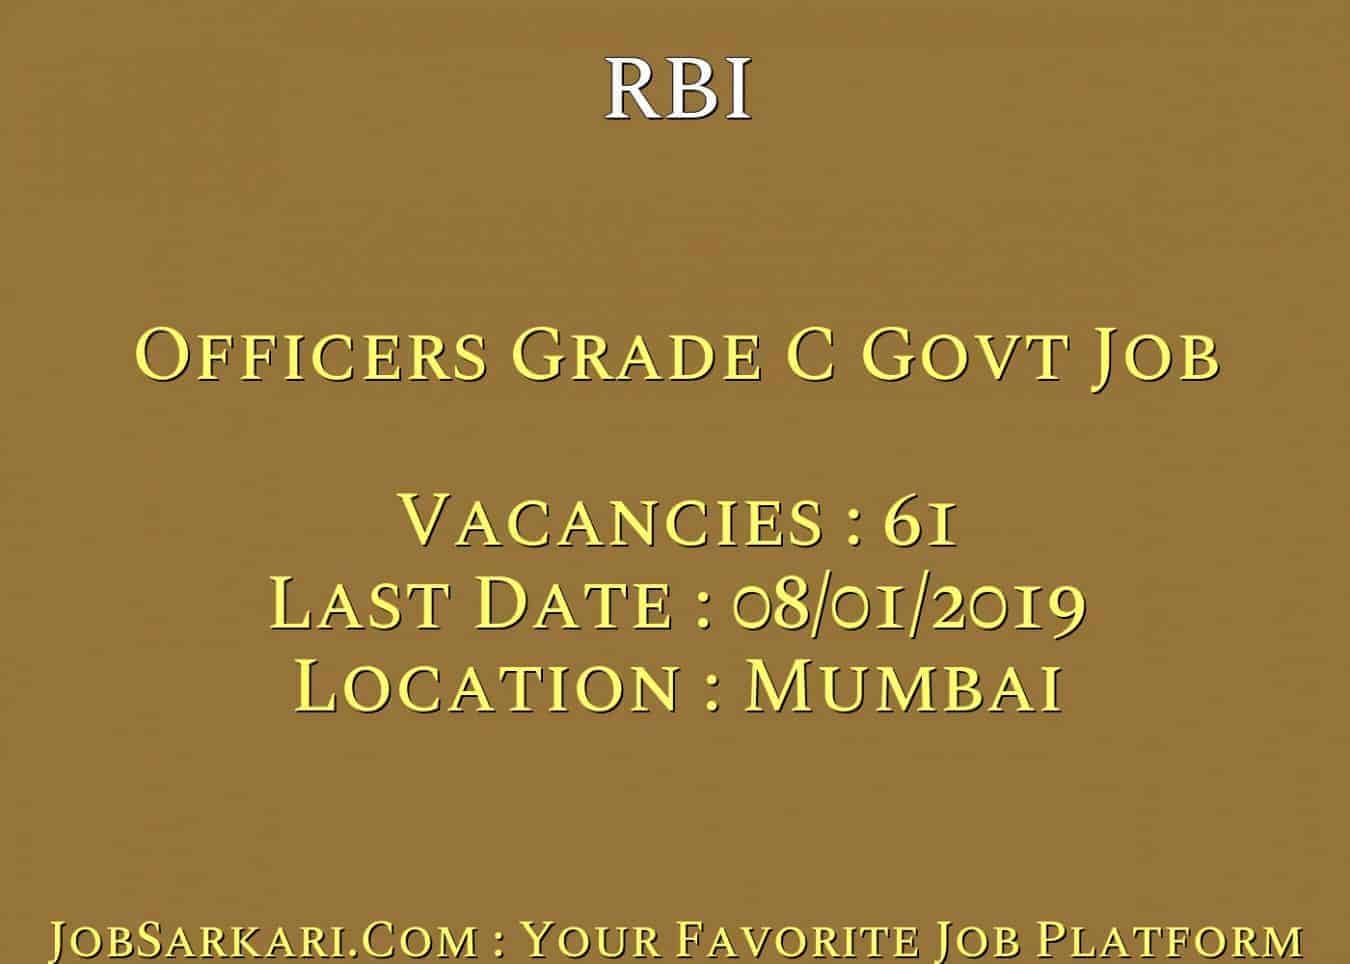 RBI Recruitment 2018 For Officers Grade C Govt Job